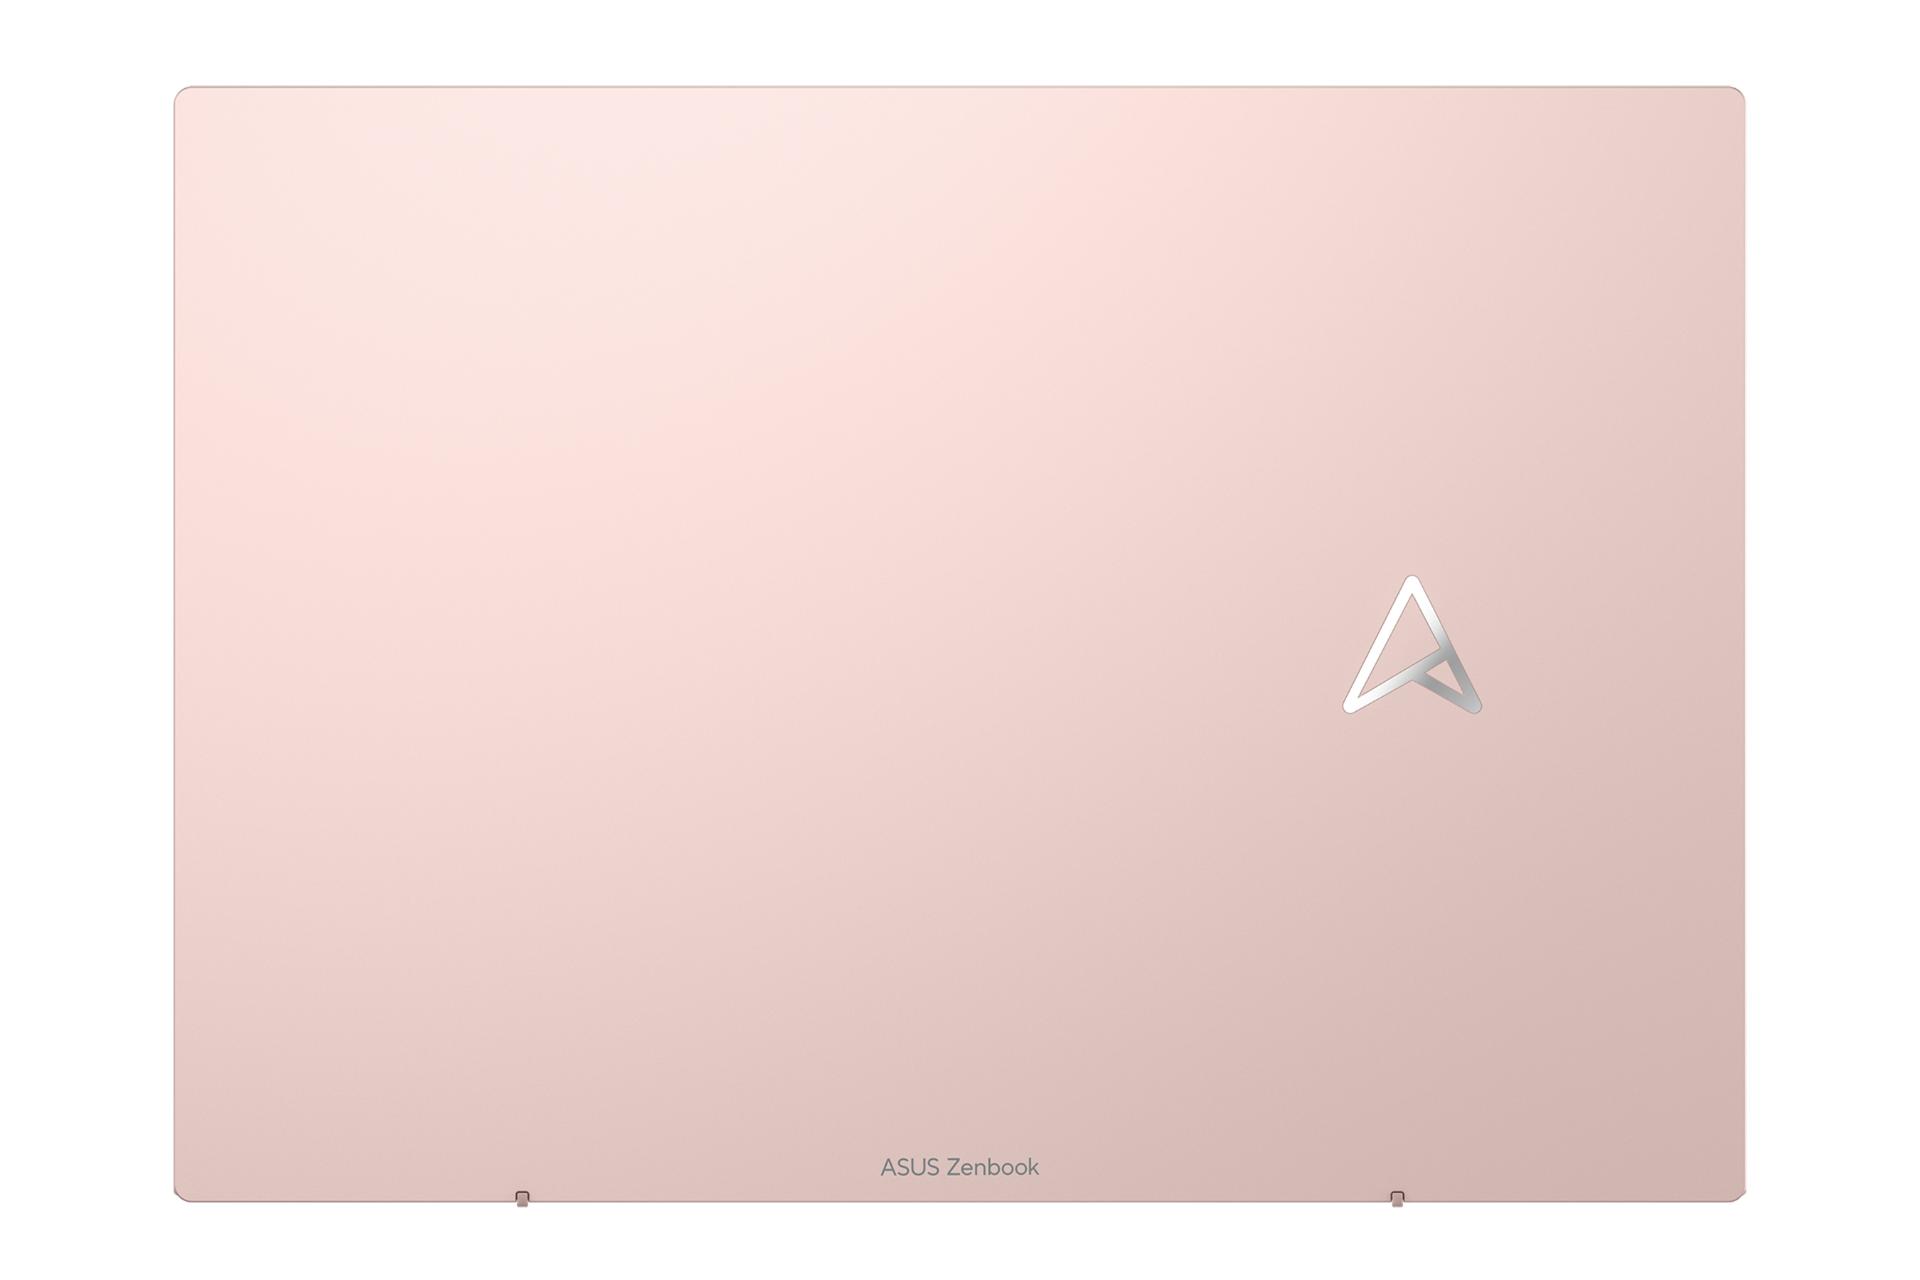 نمای پنل پشت نمایشگر لپ تاپ Zenbook S 13 OLED UM5302 ایسوس و نمایش لوگو رنگ صورتی